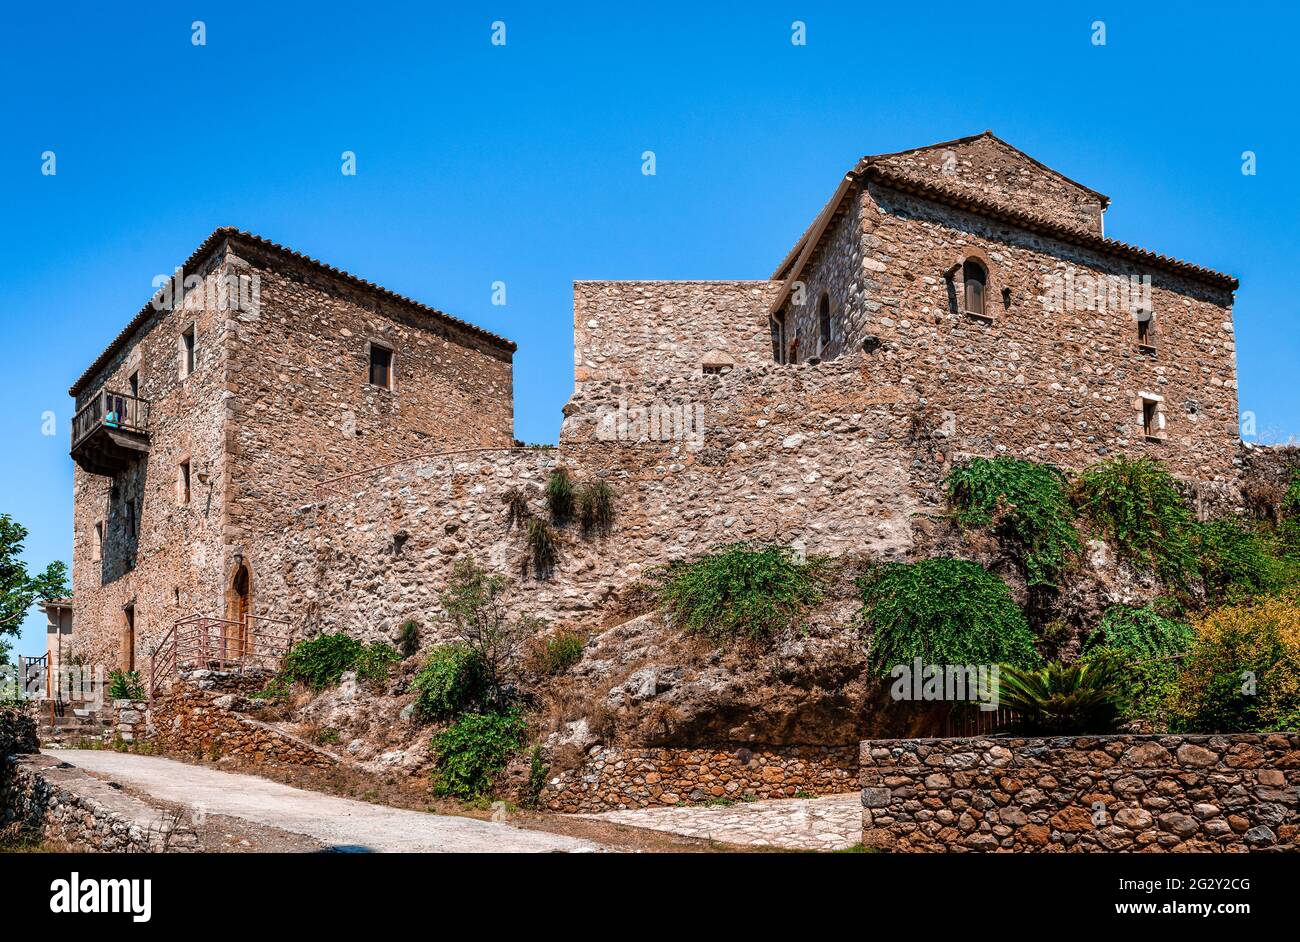 Maisons traditionnelles abandonnées dans le vieux Kardamili, Mani, Grèce. Exemple typique de l'architecture vernaculaire de Maniot, développée au XIXe siècle. Banque D'Images